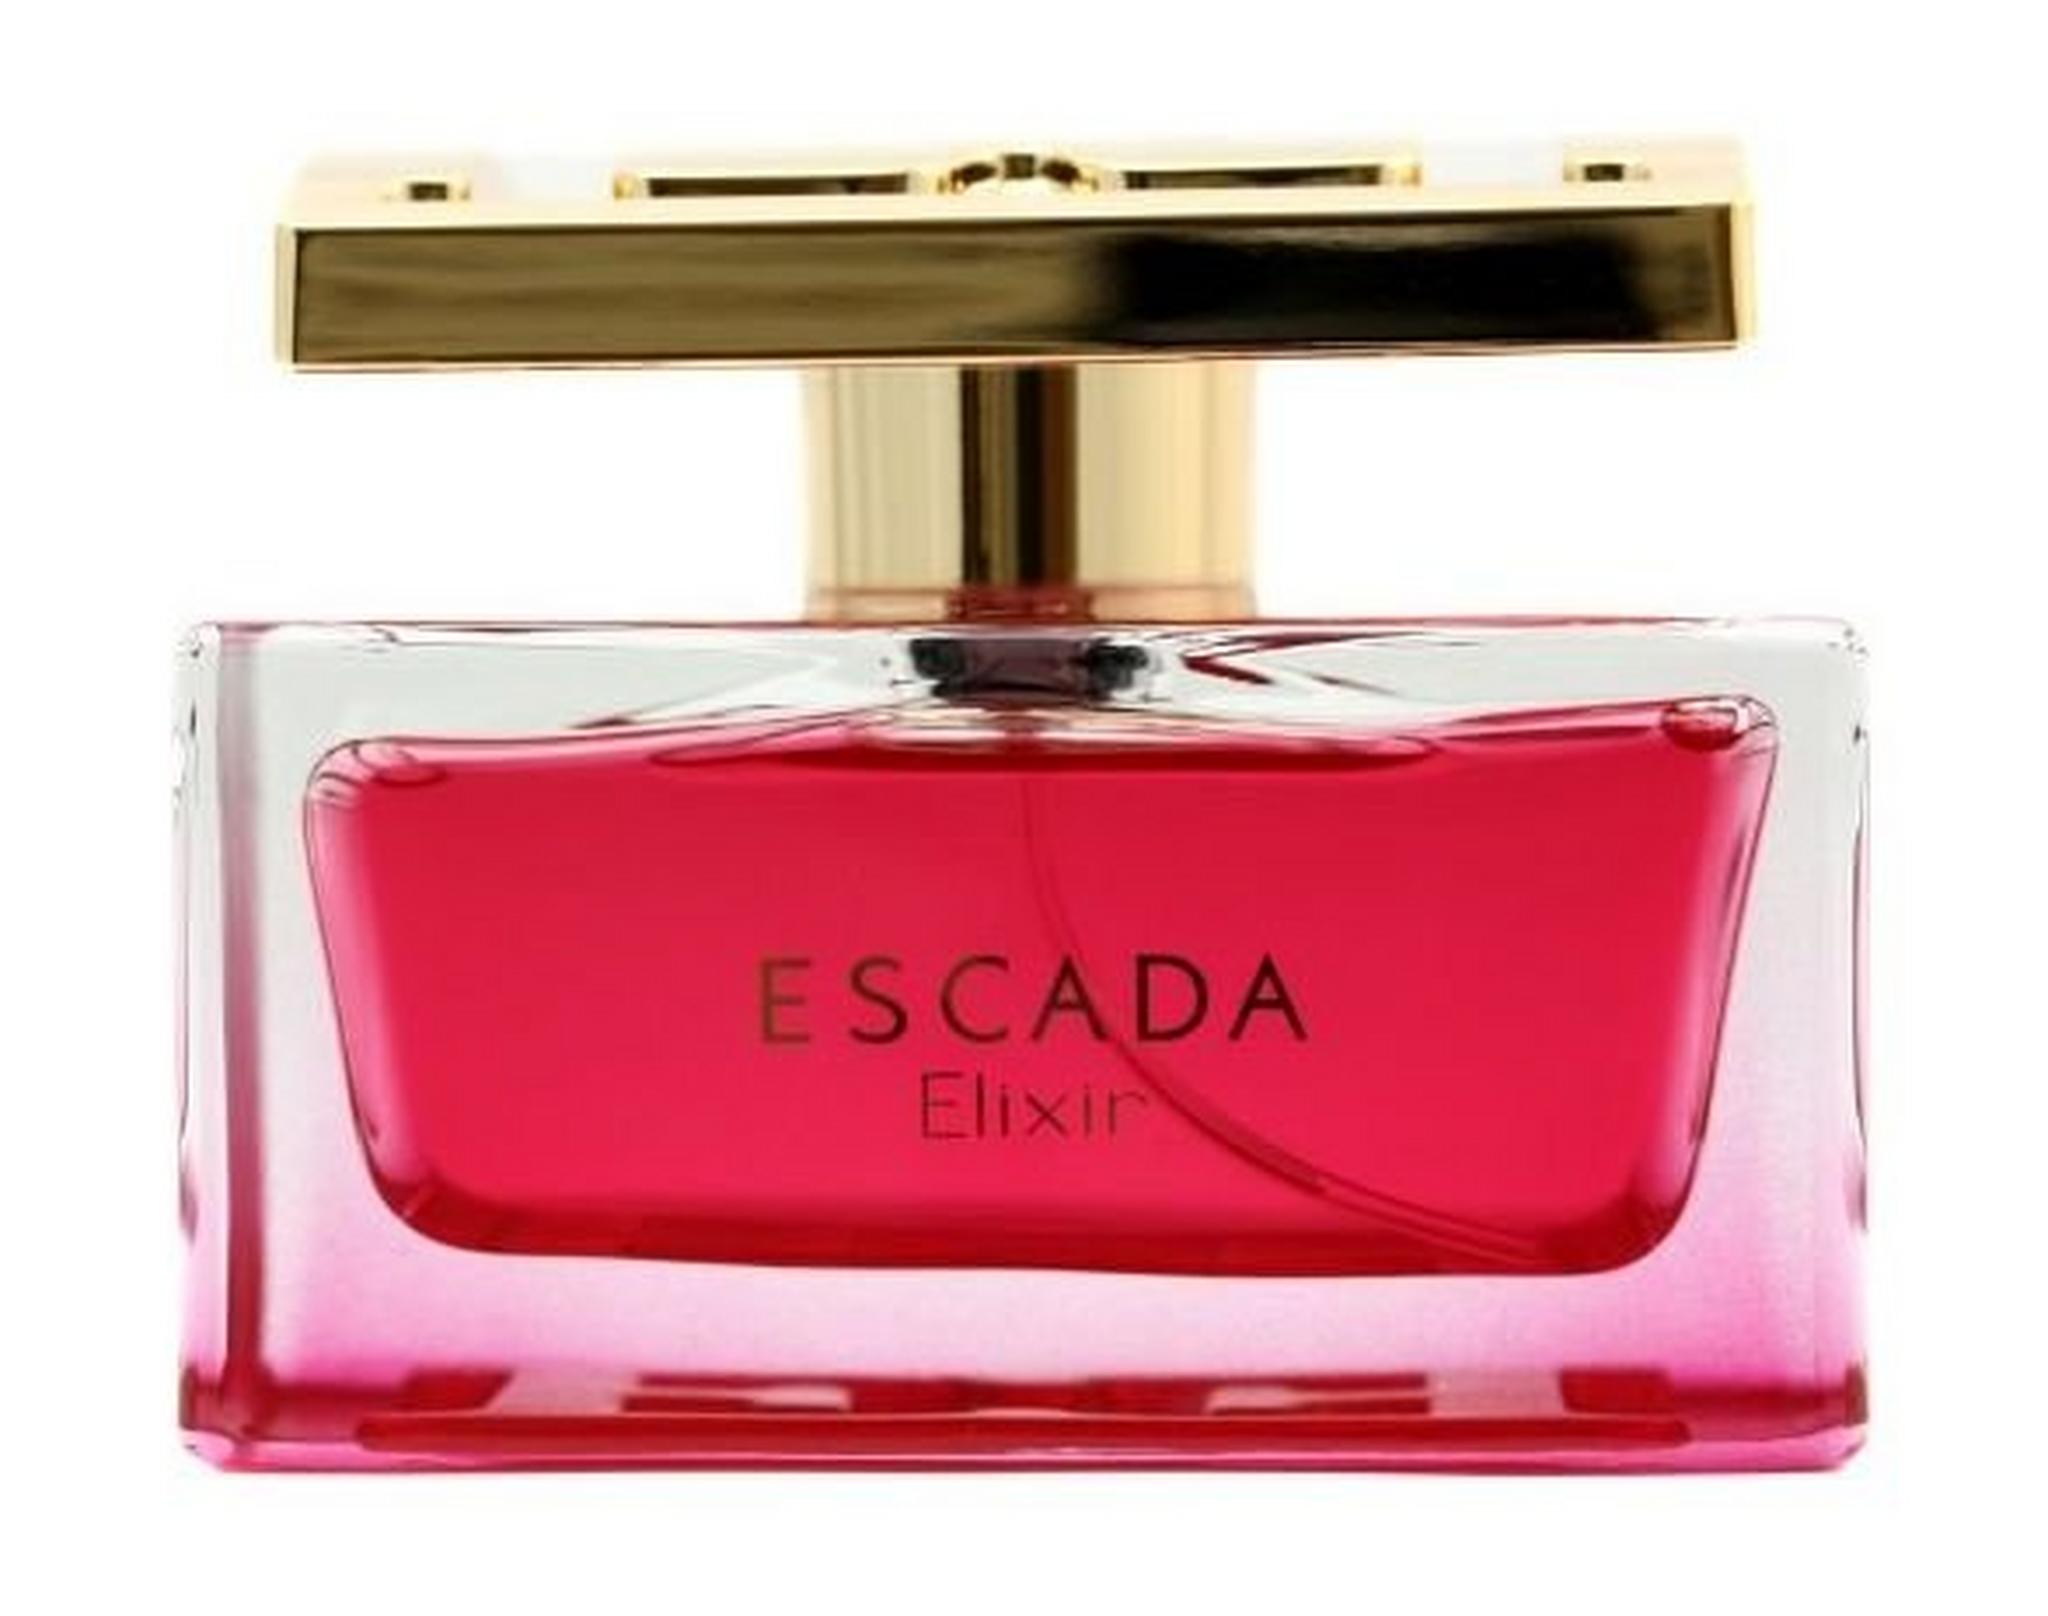 Escada Especially Elixir For Women 75ml Eau de Parfum